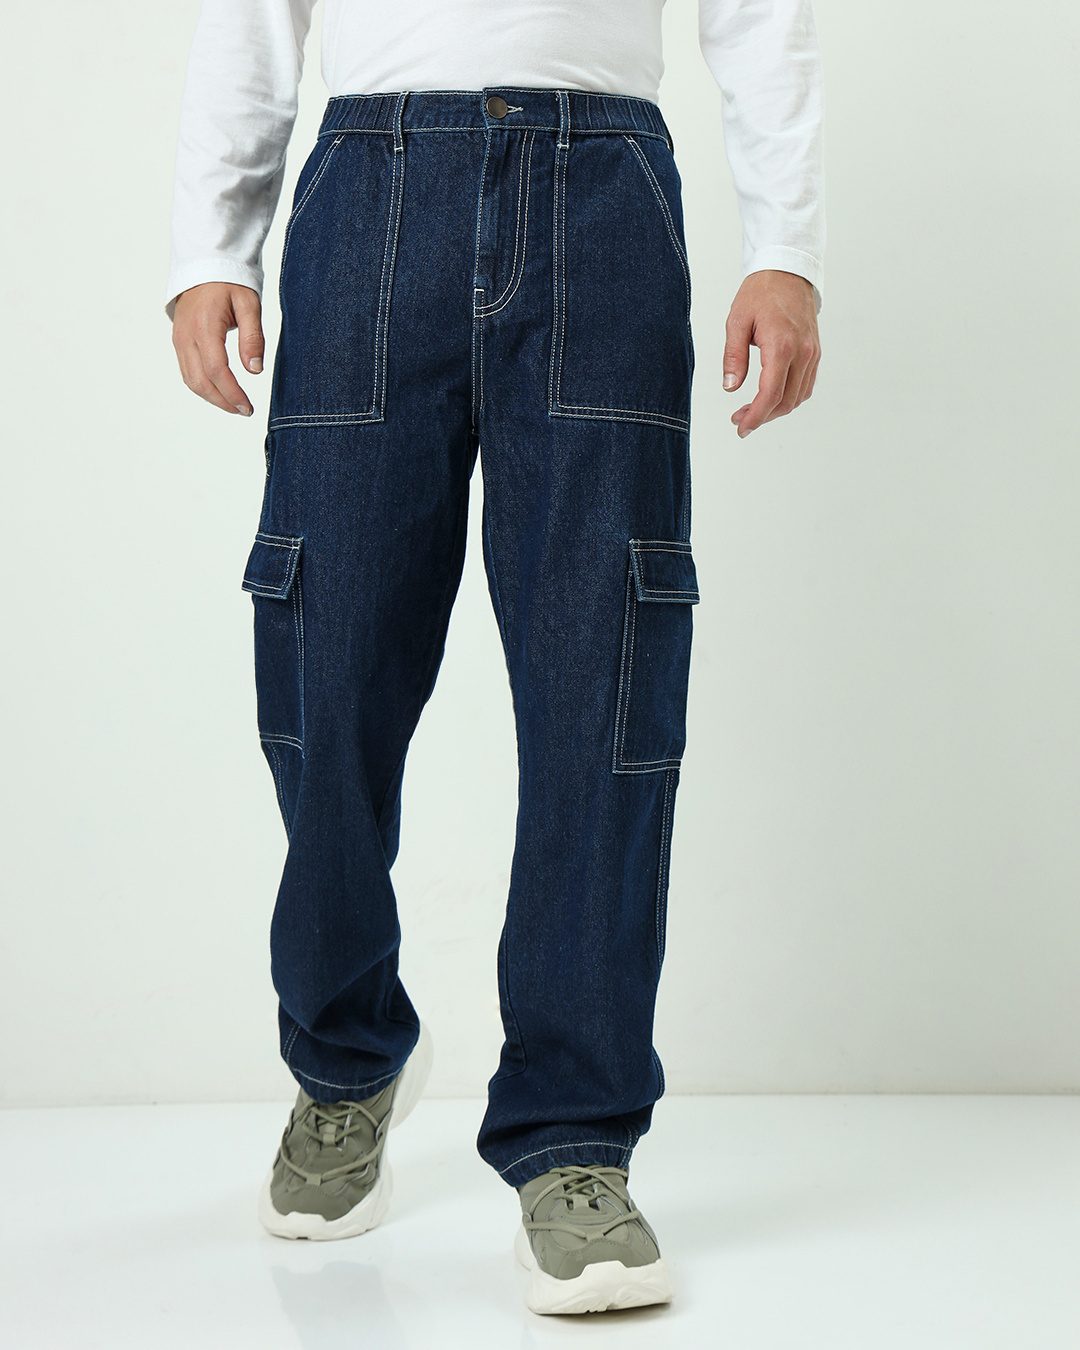 Buy Men's Blue Baggy Cargo Jeans Online at Bewakoof